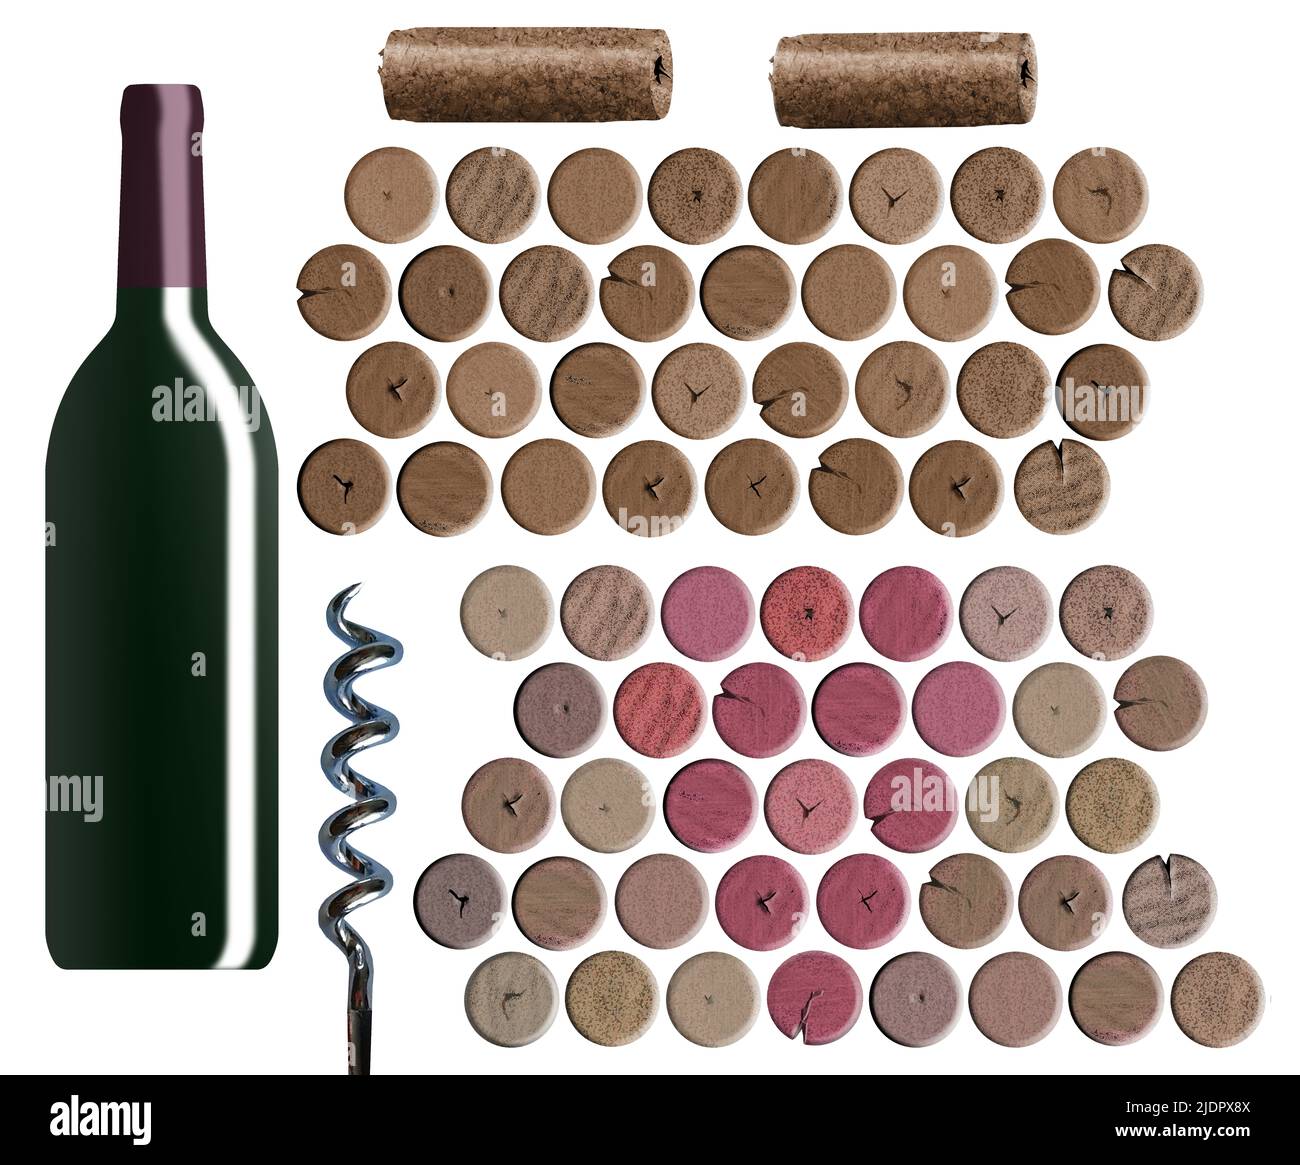 Los corchos de vino y artículos relacionados se consideran ilustraciones en 3-d para ser utilizadas como recursos gráficos. Foto de stock